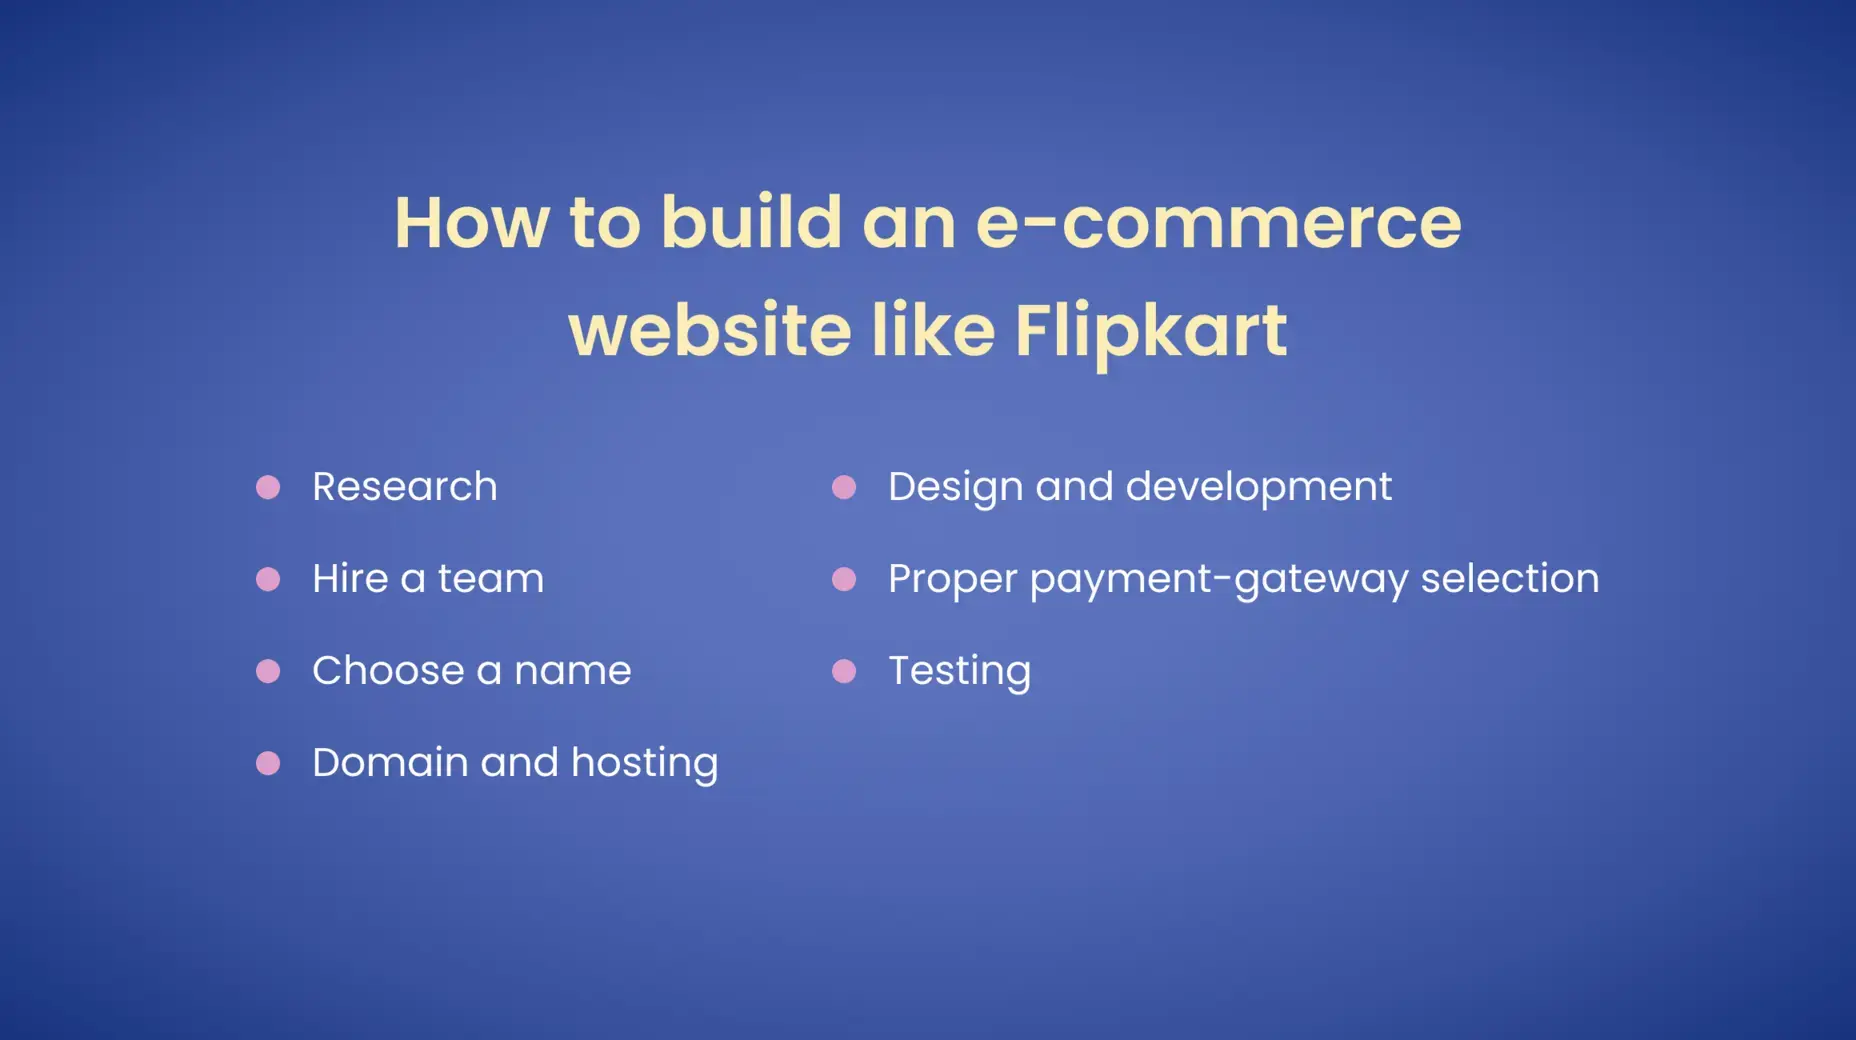 Build eCommerce website like Flipkart